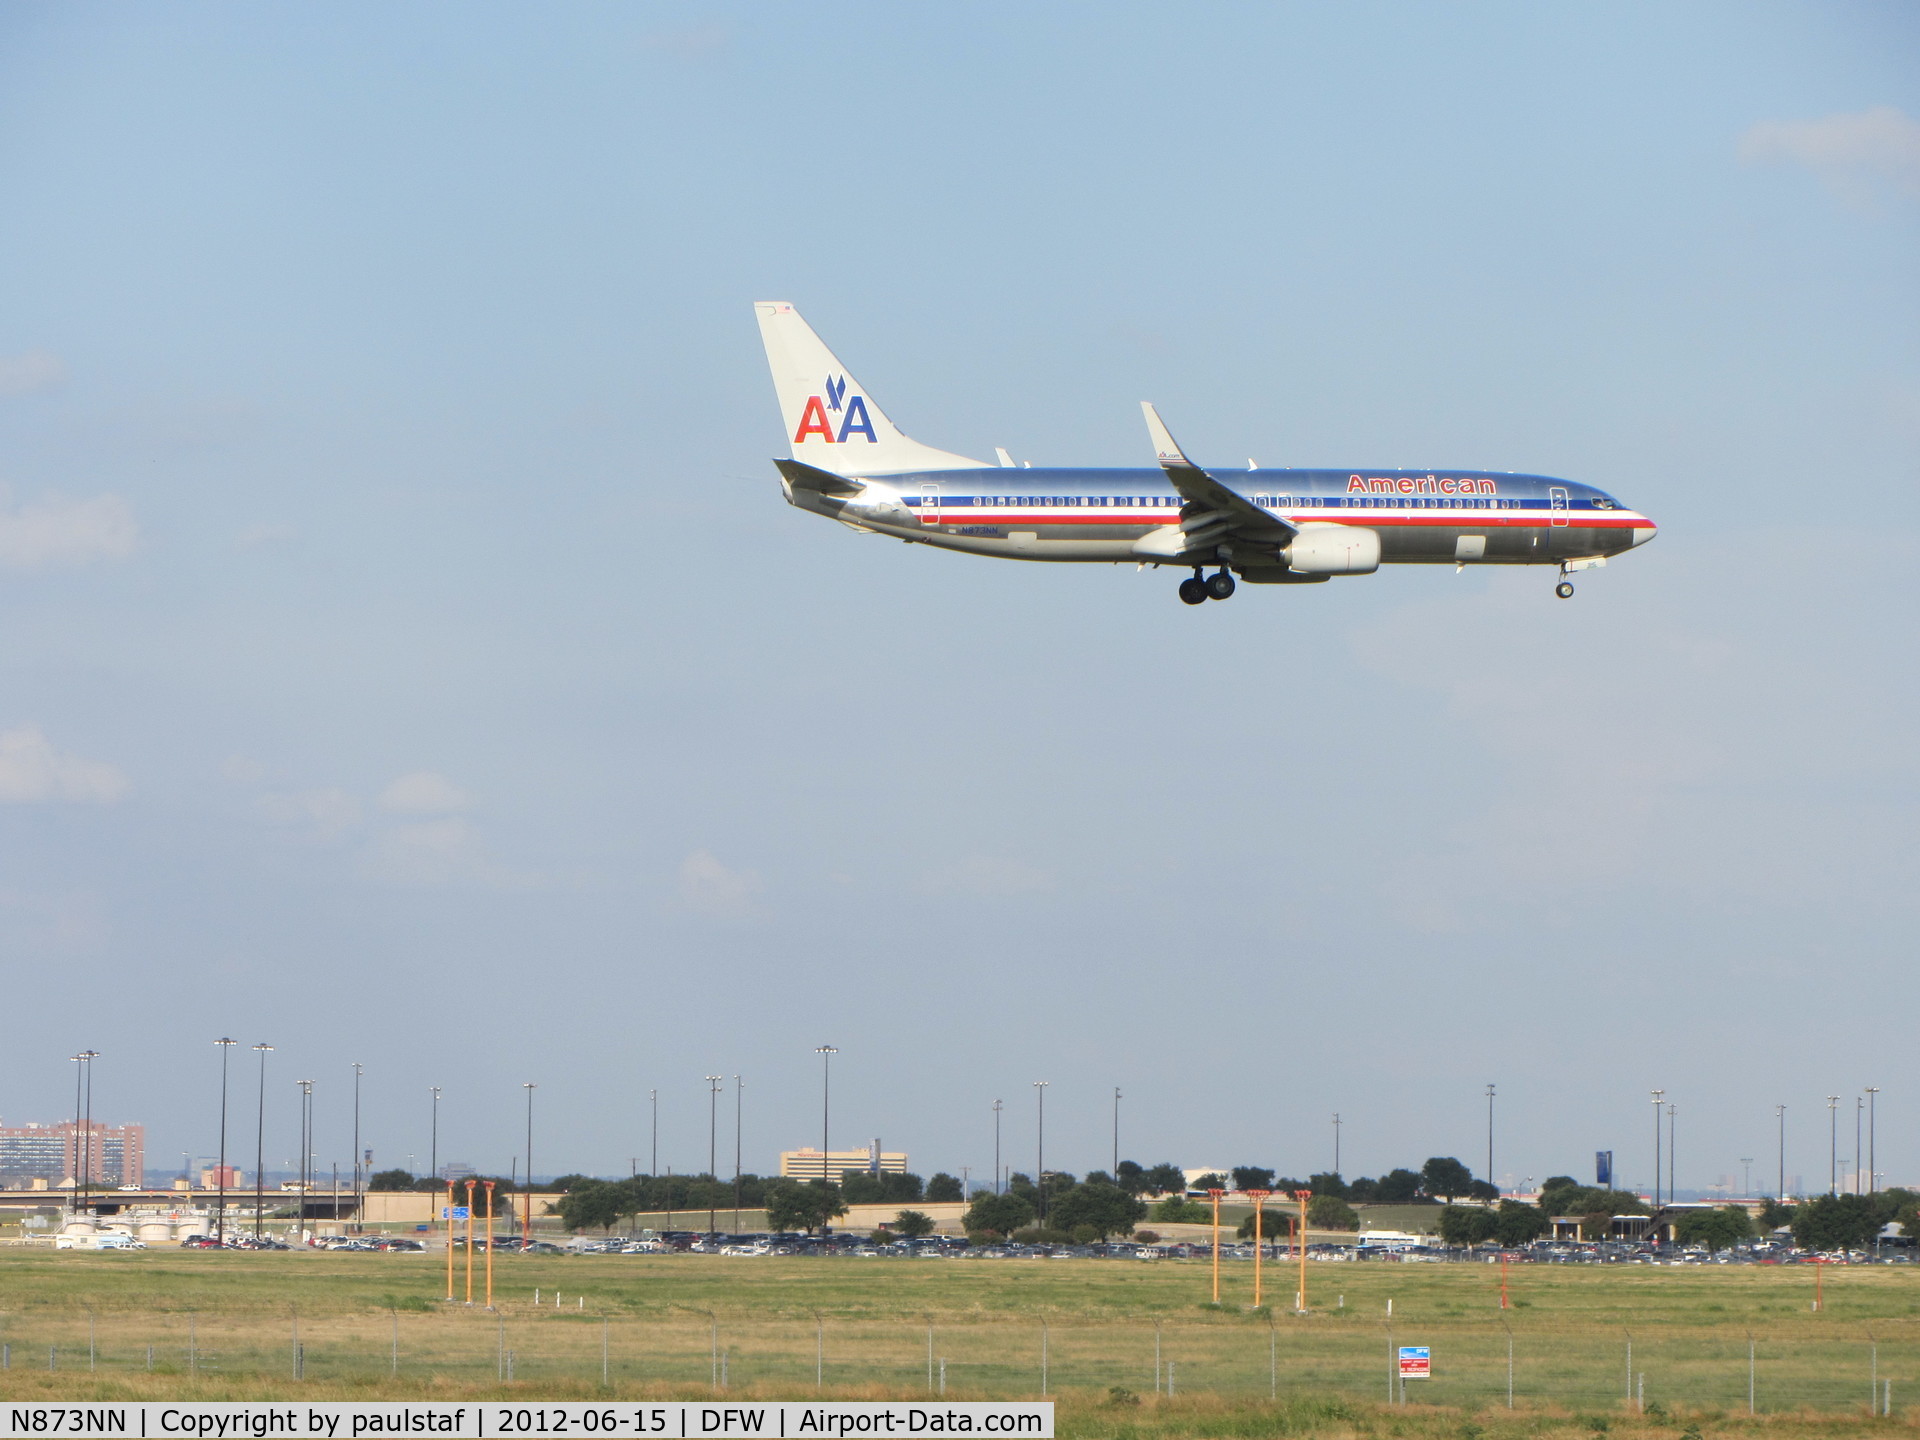 N873NN, 2011 Boeing 737-823 C/N 40766, Landing on runway 18R, DFW airport